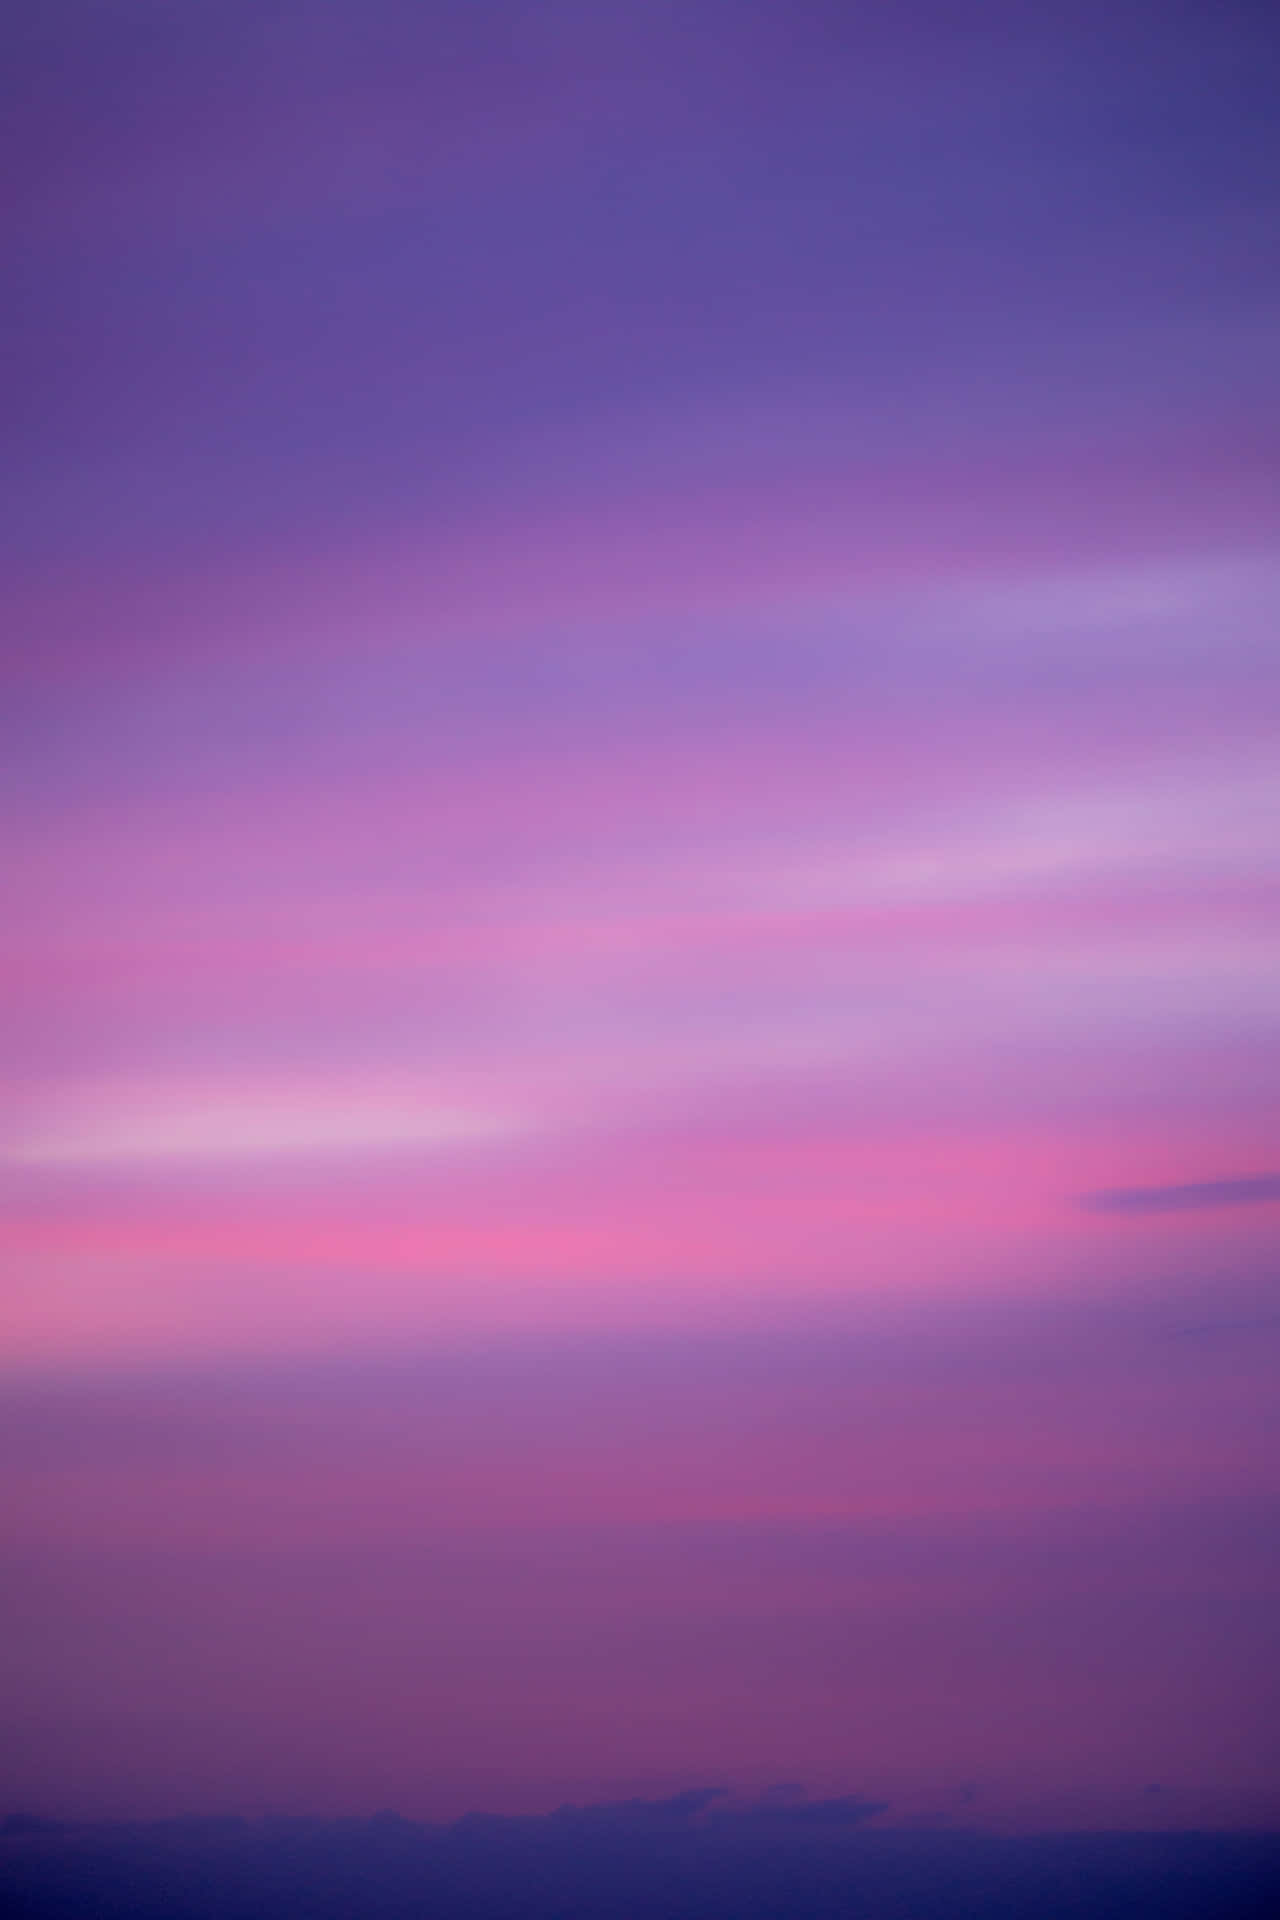 Sfondoviola E Rosa Con Skyline In Color Malva